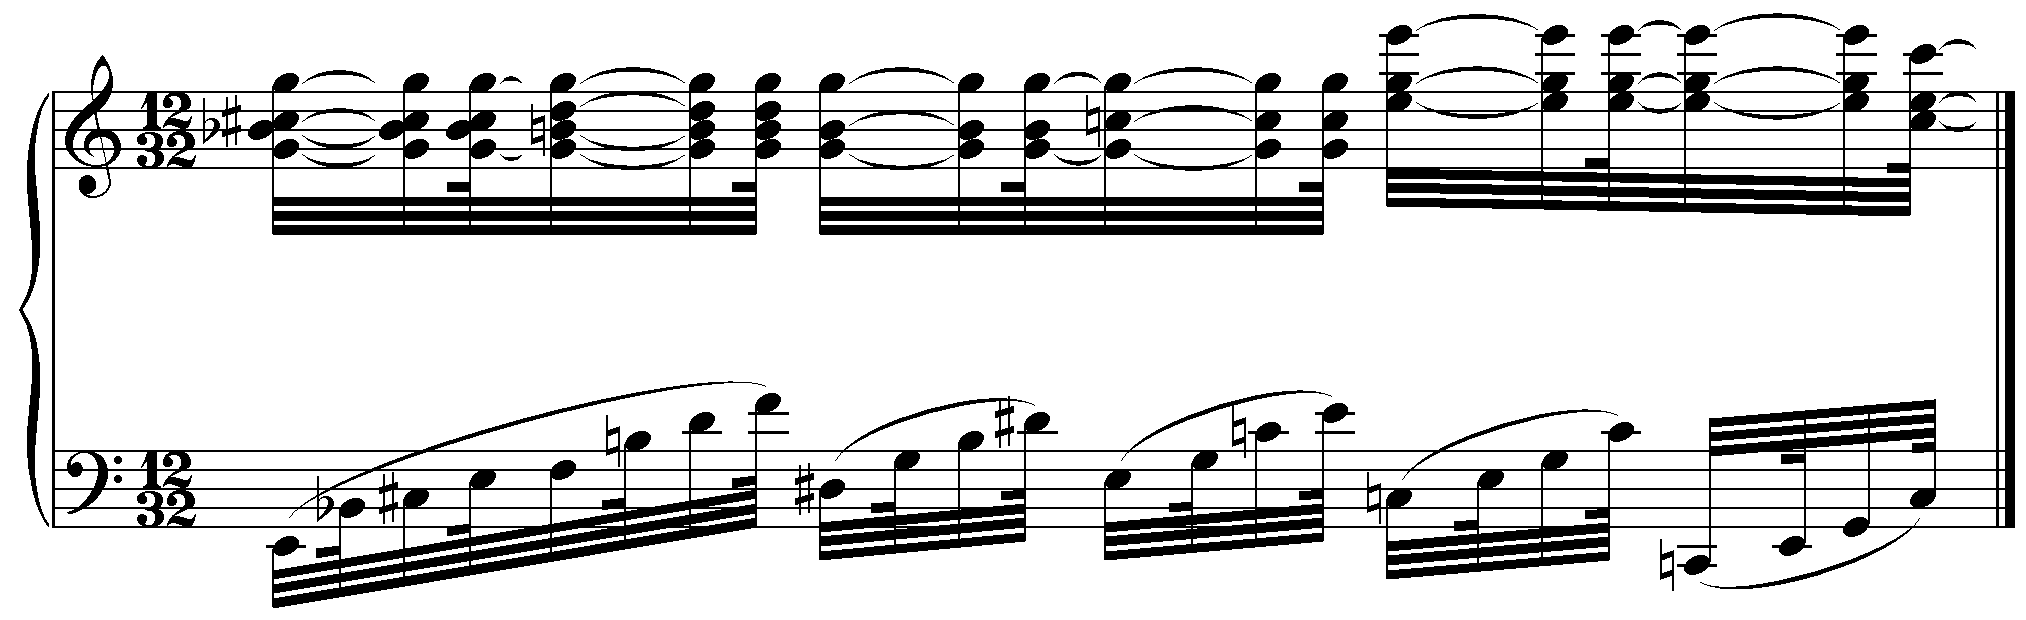 Example 4: Arietta, m. 51 (variation 3)